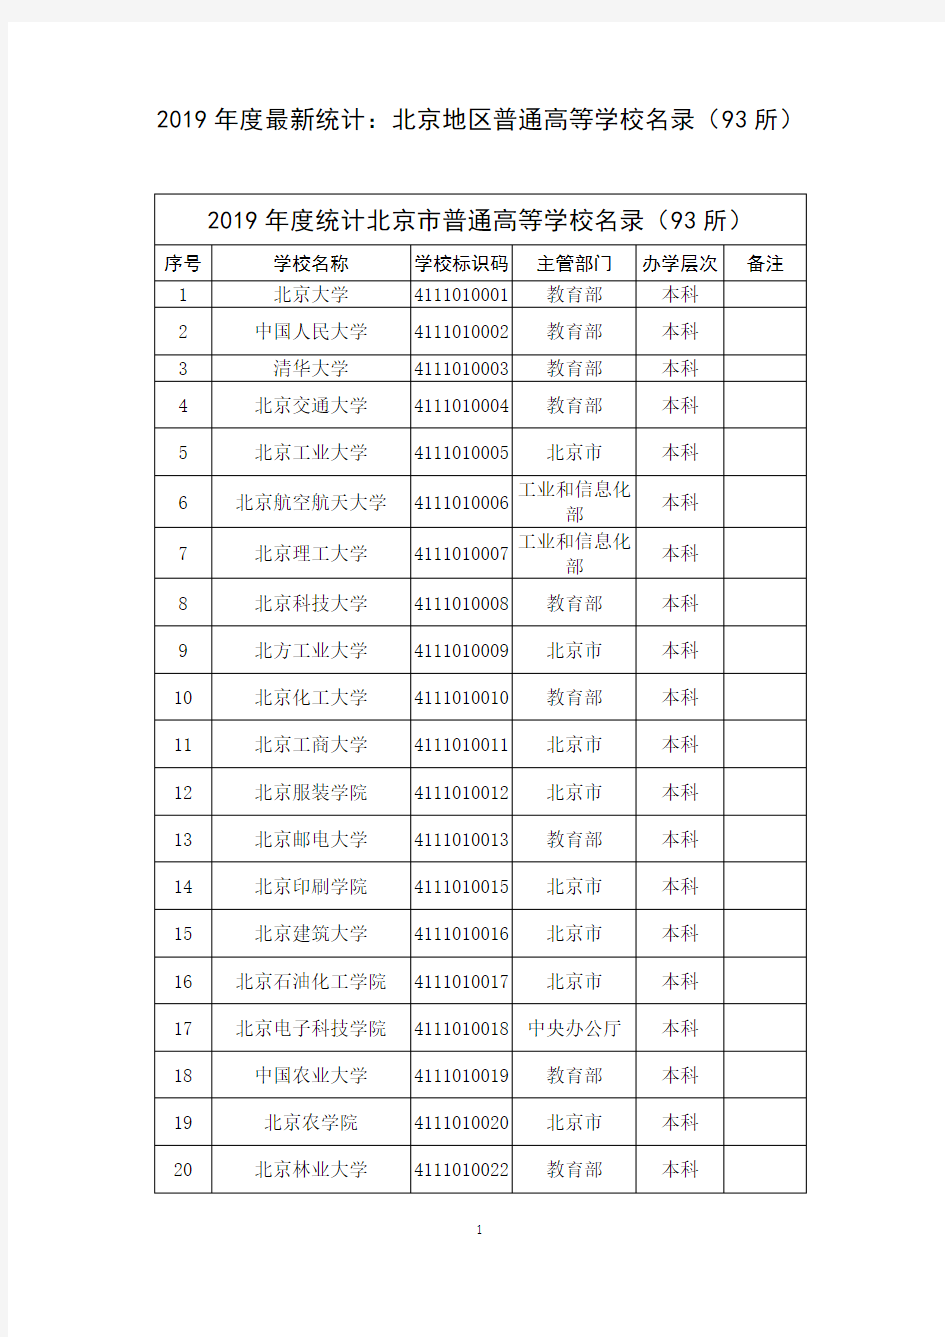 2019年度最新统计：北京地区普通高等学校名录(93所)